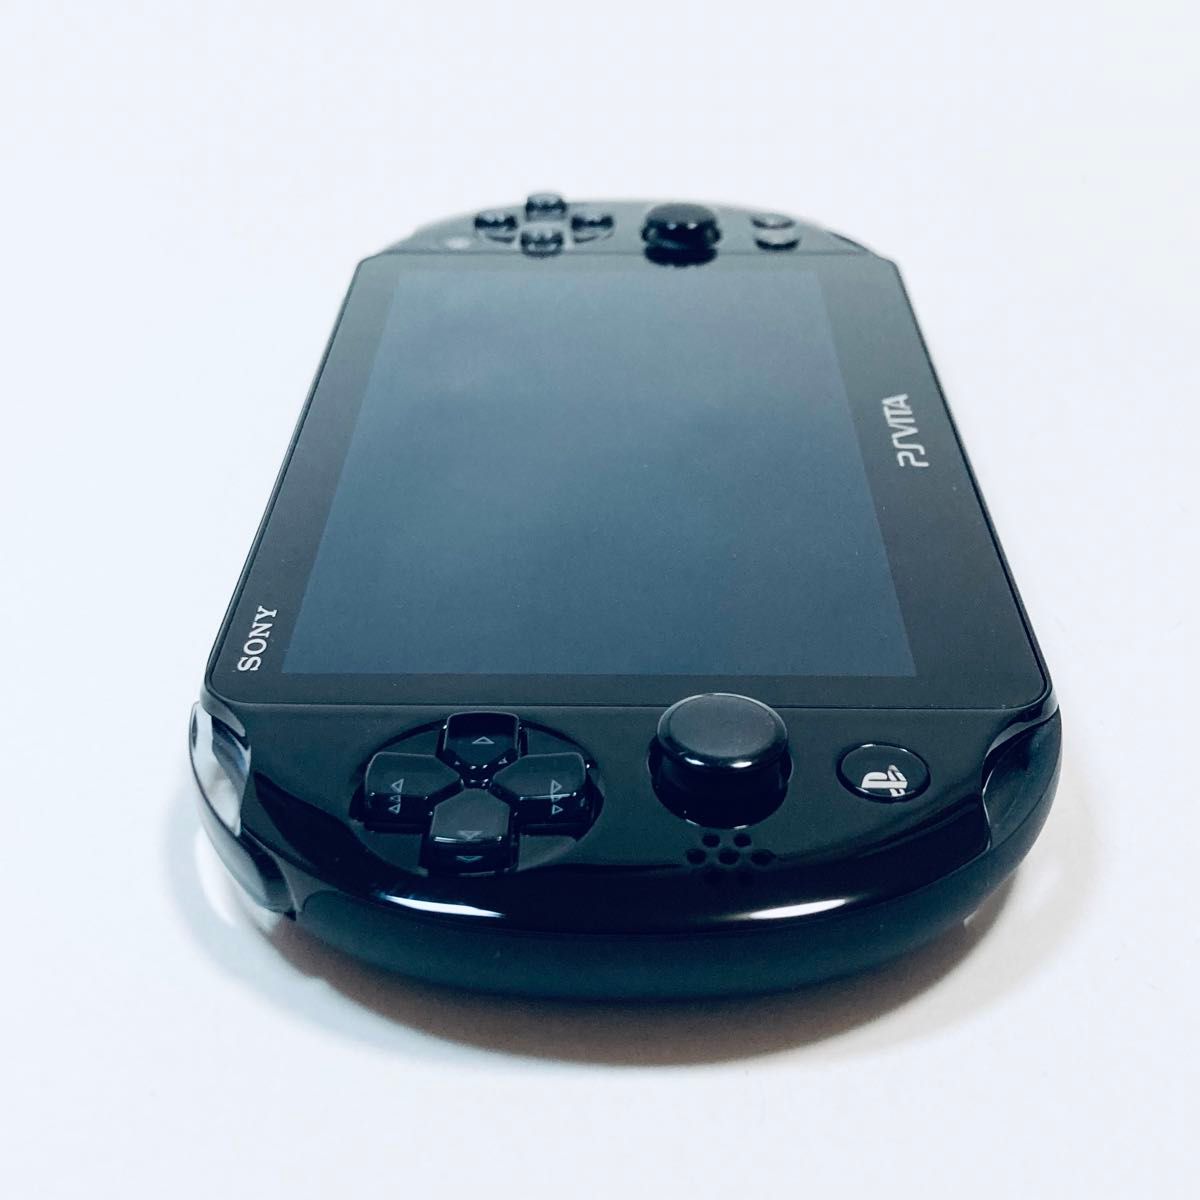 【極美品】PlayStation Vita PCH-2000 ZA11 Wi-Fi ブラック